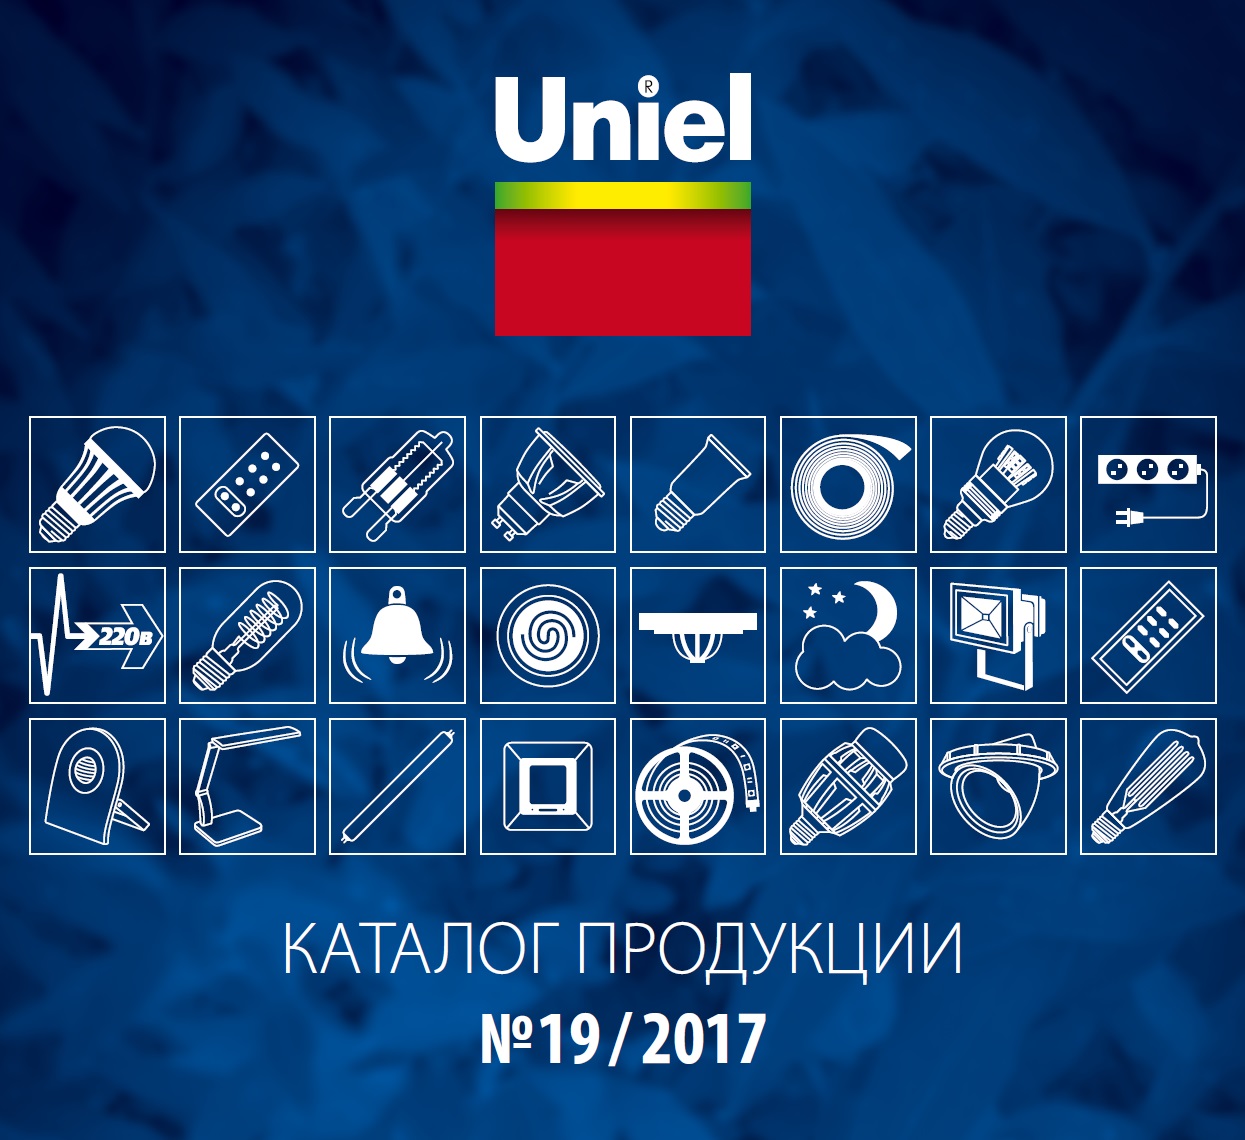 каталог продукции Uniel 2017